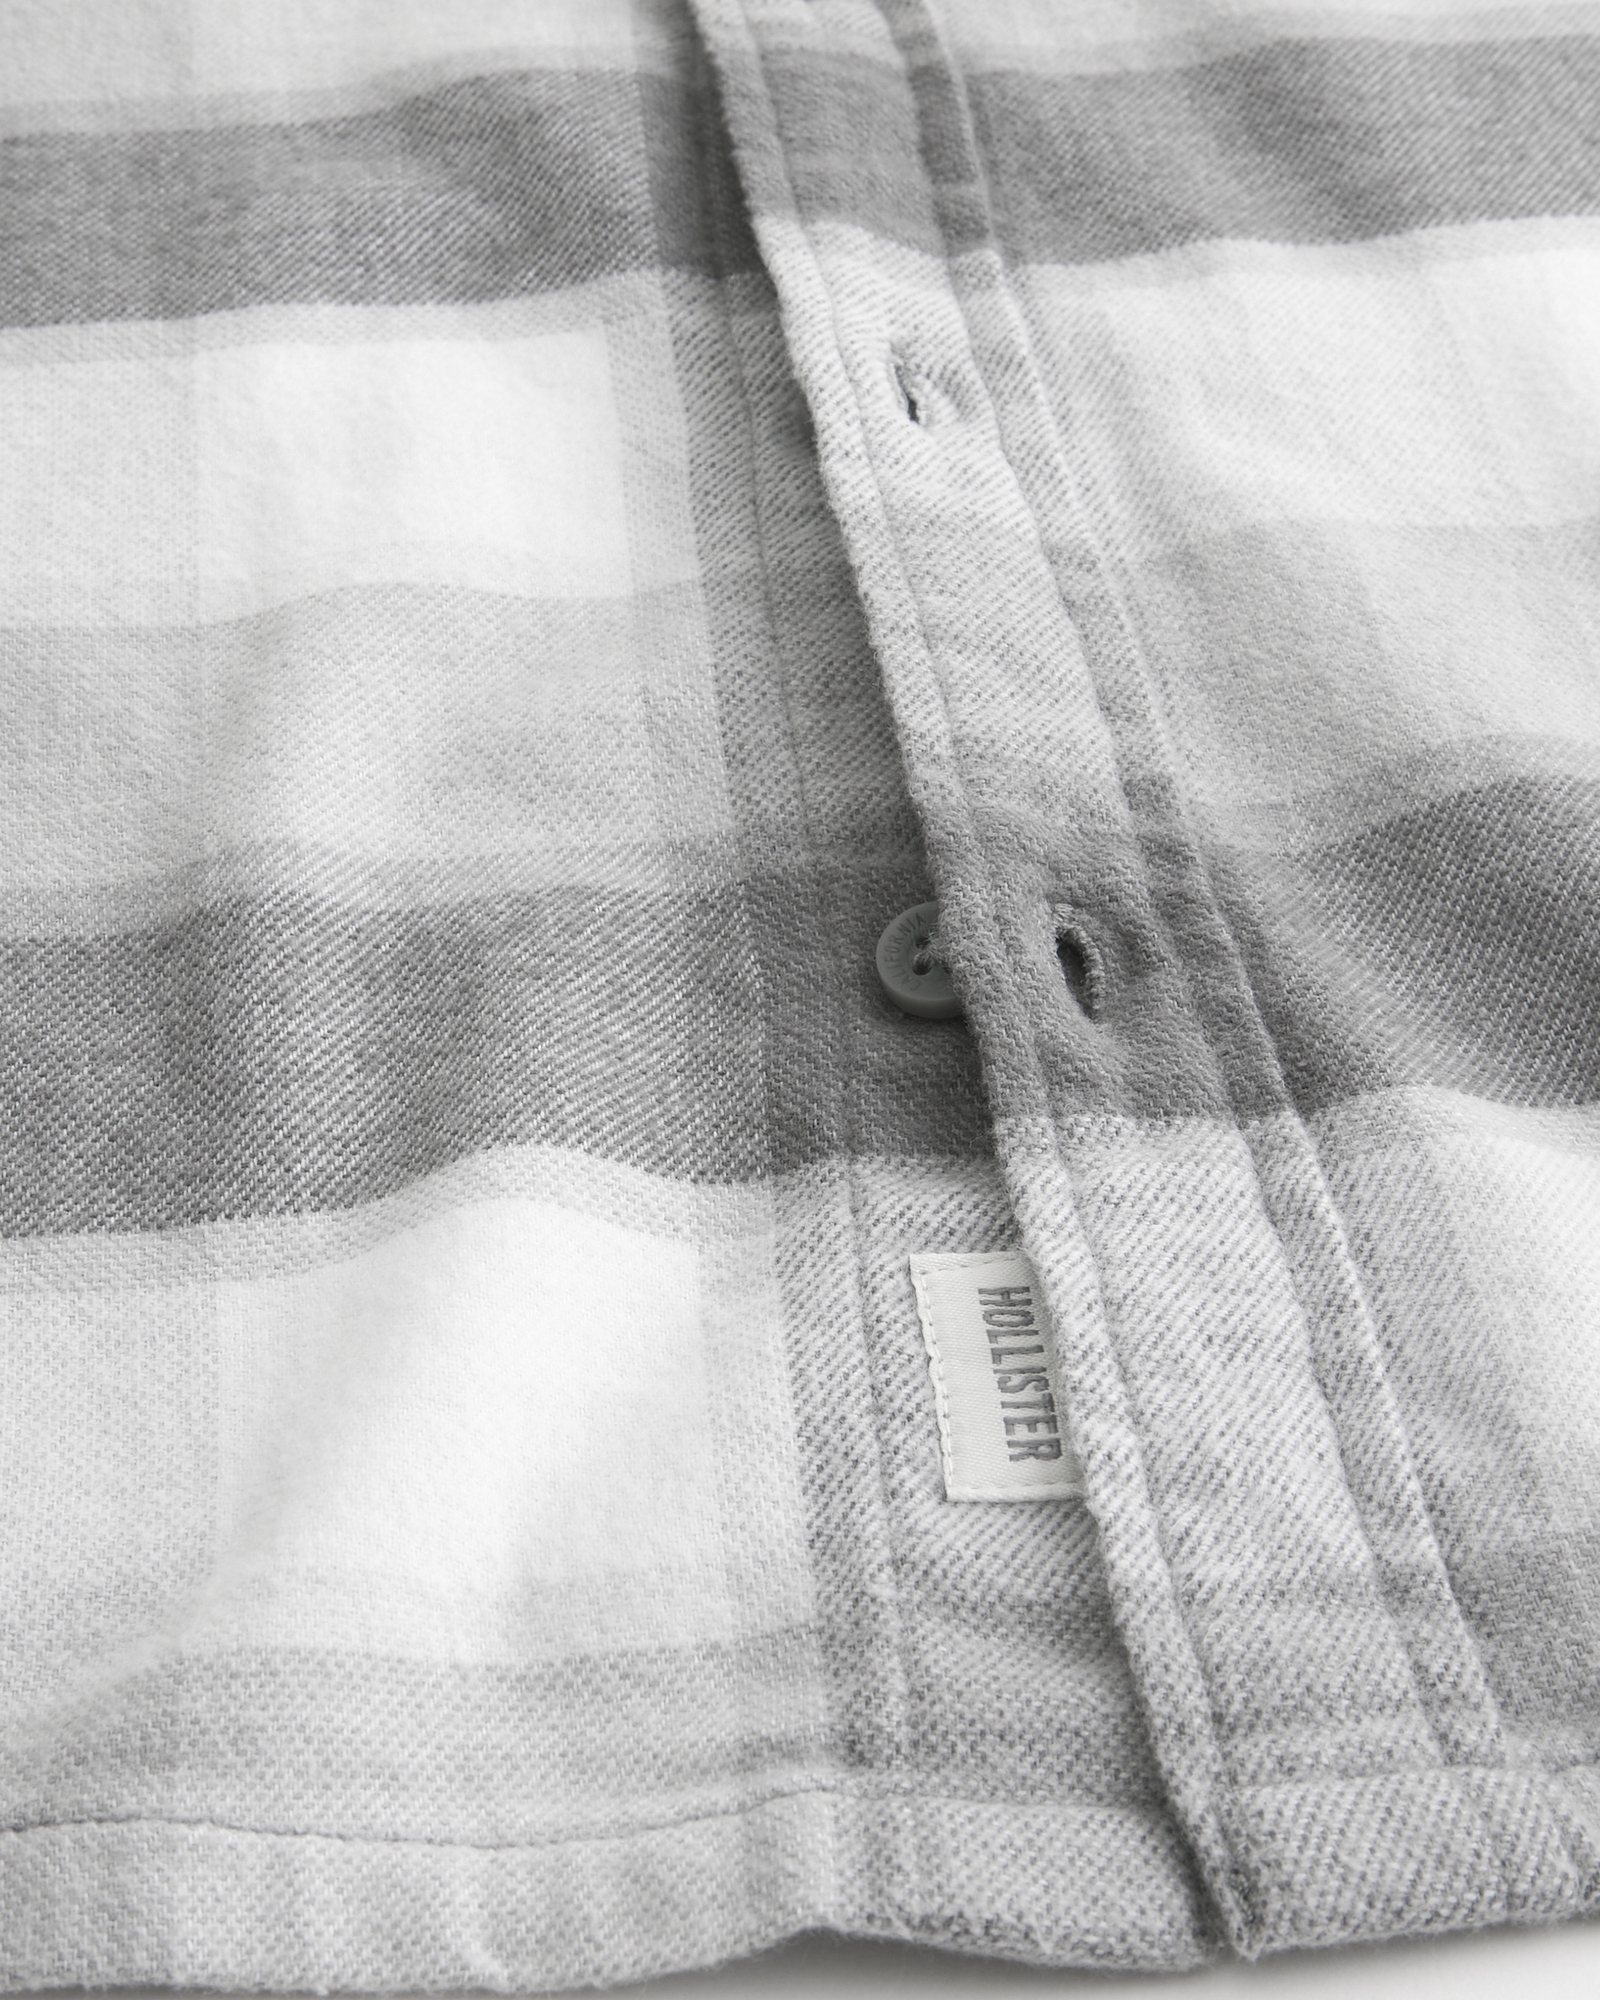 Hollister Men's Plaid Shirt 100% Cotton Size: XL fits L - clothing